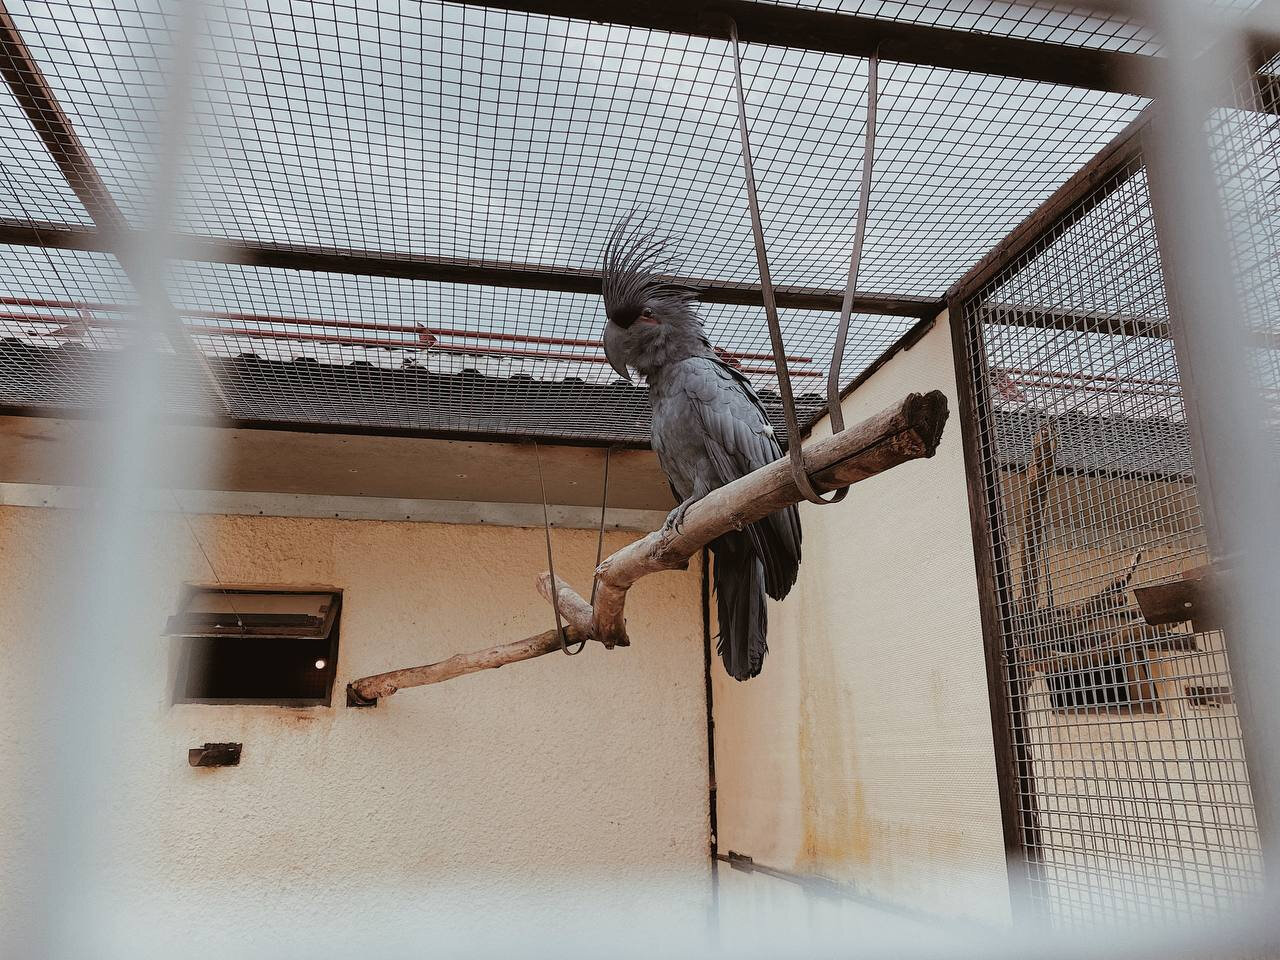 Чёрный пальмовый какаду напоминает демона — это один из самых крупных видов попугаев. Фото: Анастасия Иванова